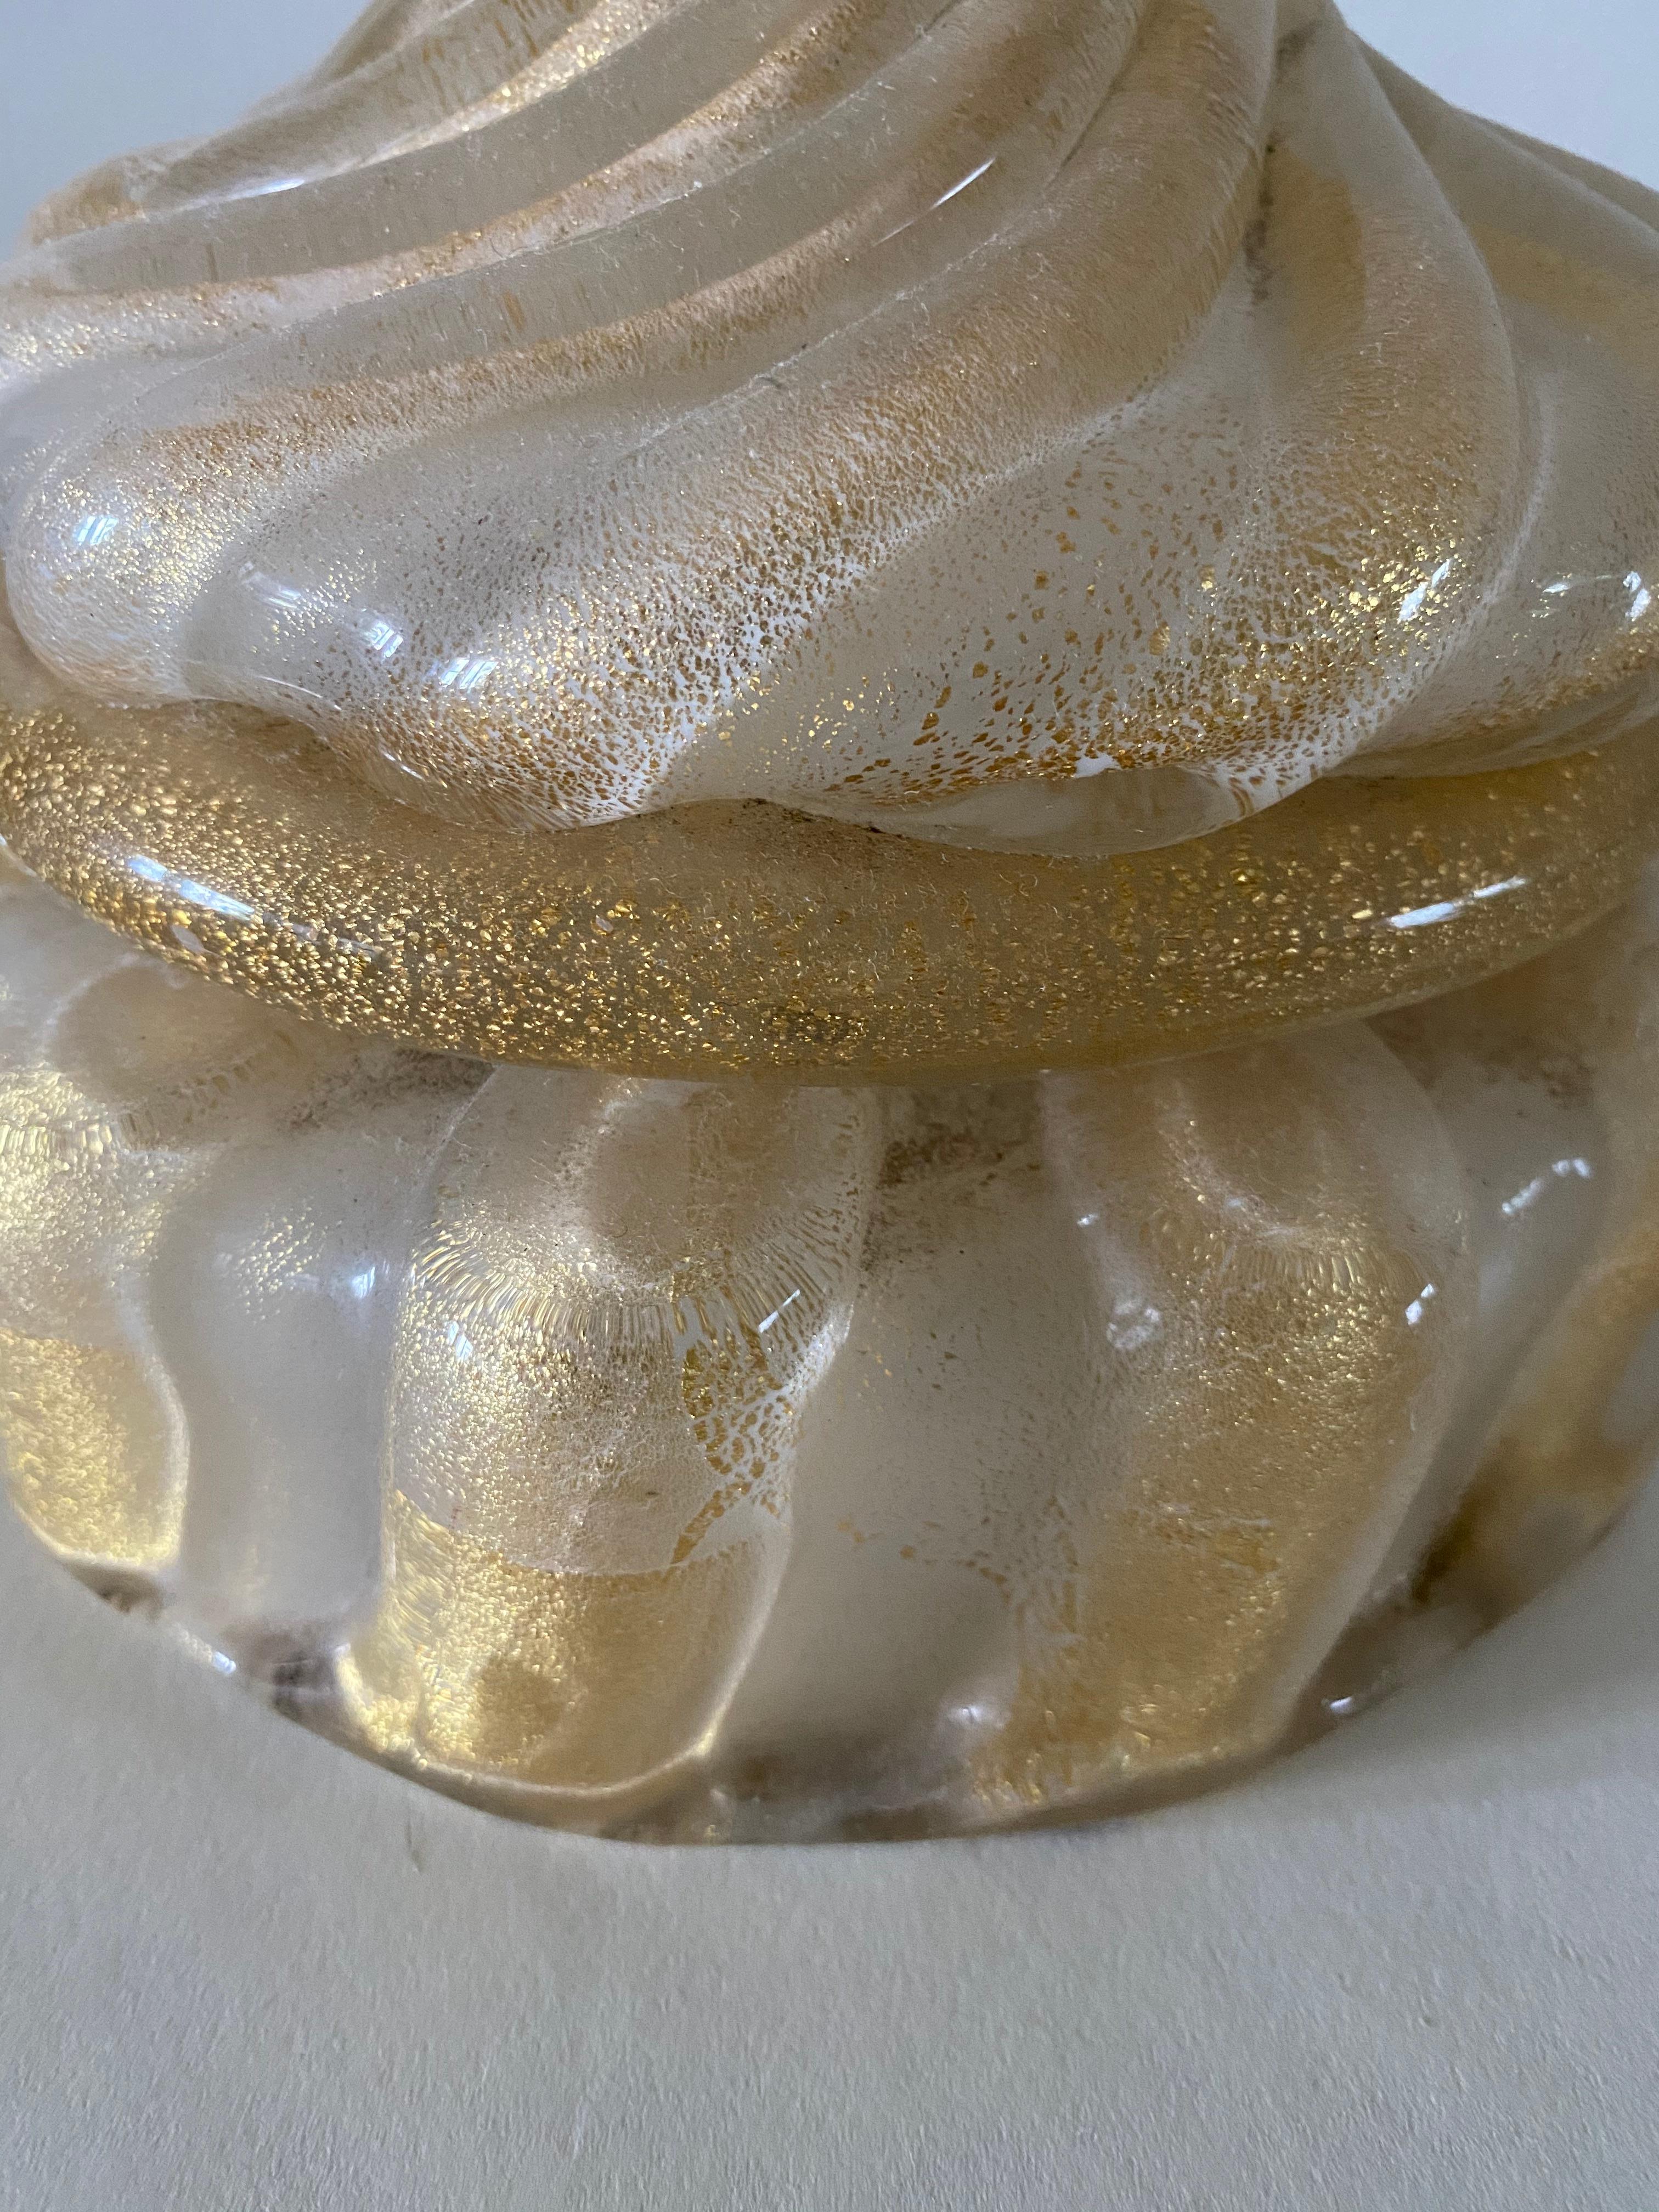 Moderne Lampe aus mundgeblasenem Glas aus der Jahrhundertmitte, hergestellt in den berühmten Studios von Barovier & Tosi in Murano (Venedig), Italien. Das Original-Label ist auf der Unterseite der Leuchte angebracht.

Die Lampe ist